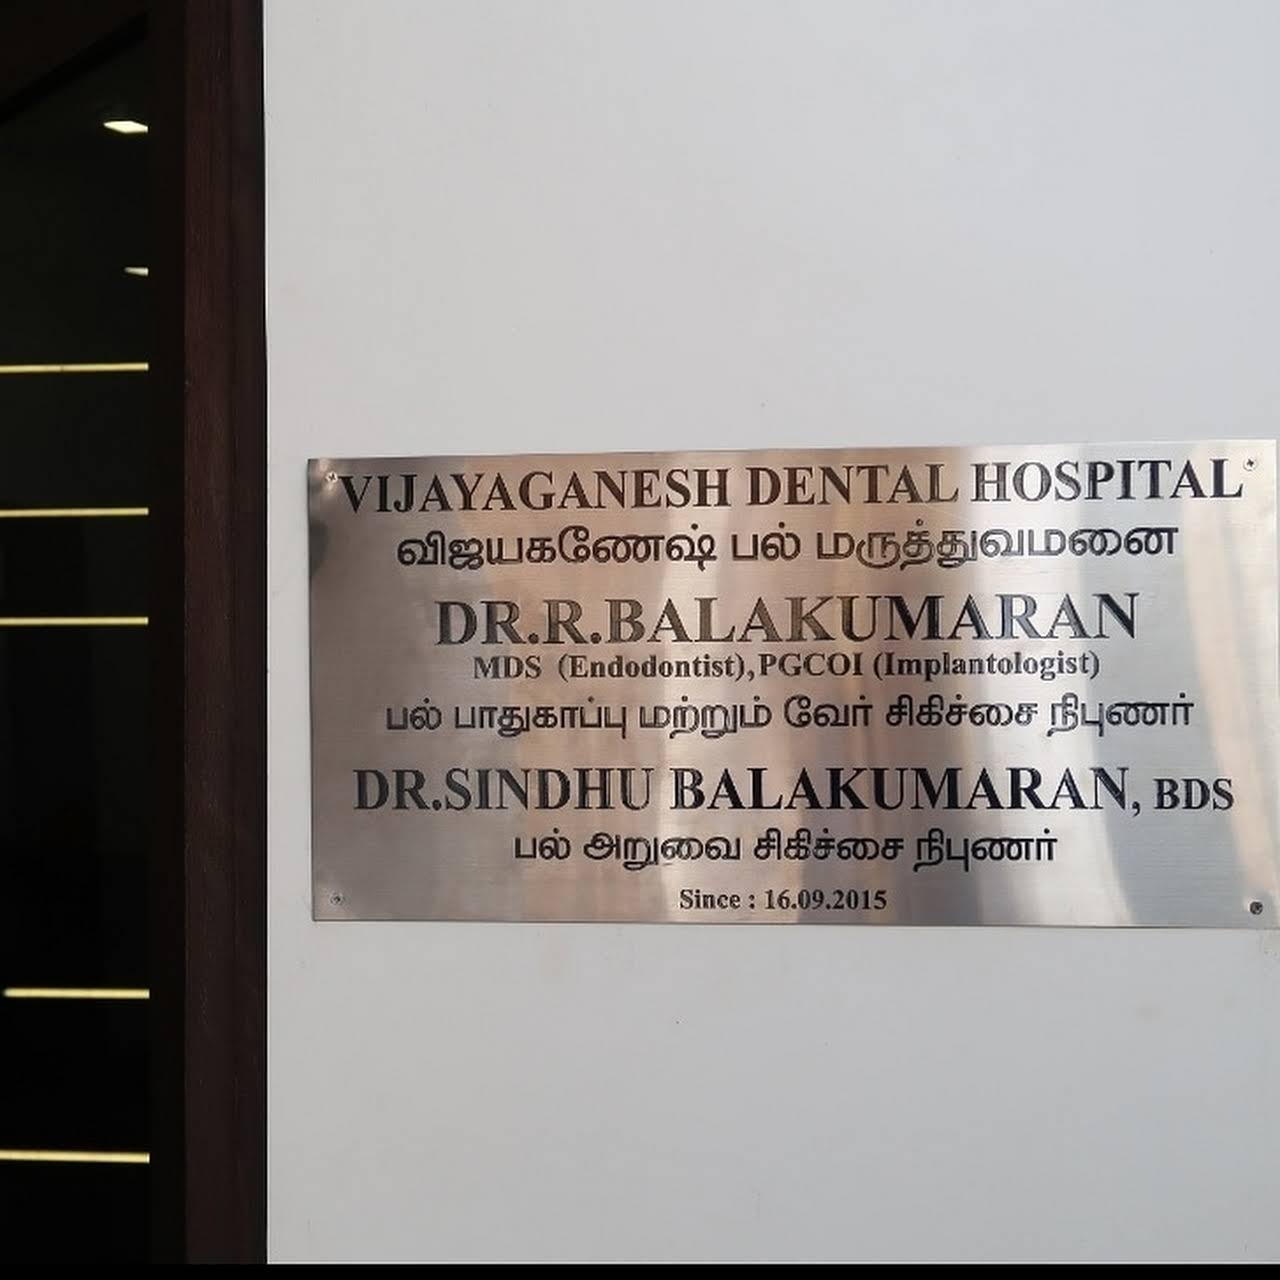 Vijayaganesh dental hospital - Logo